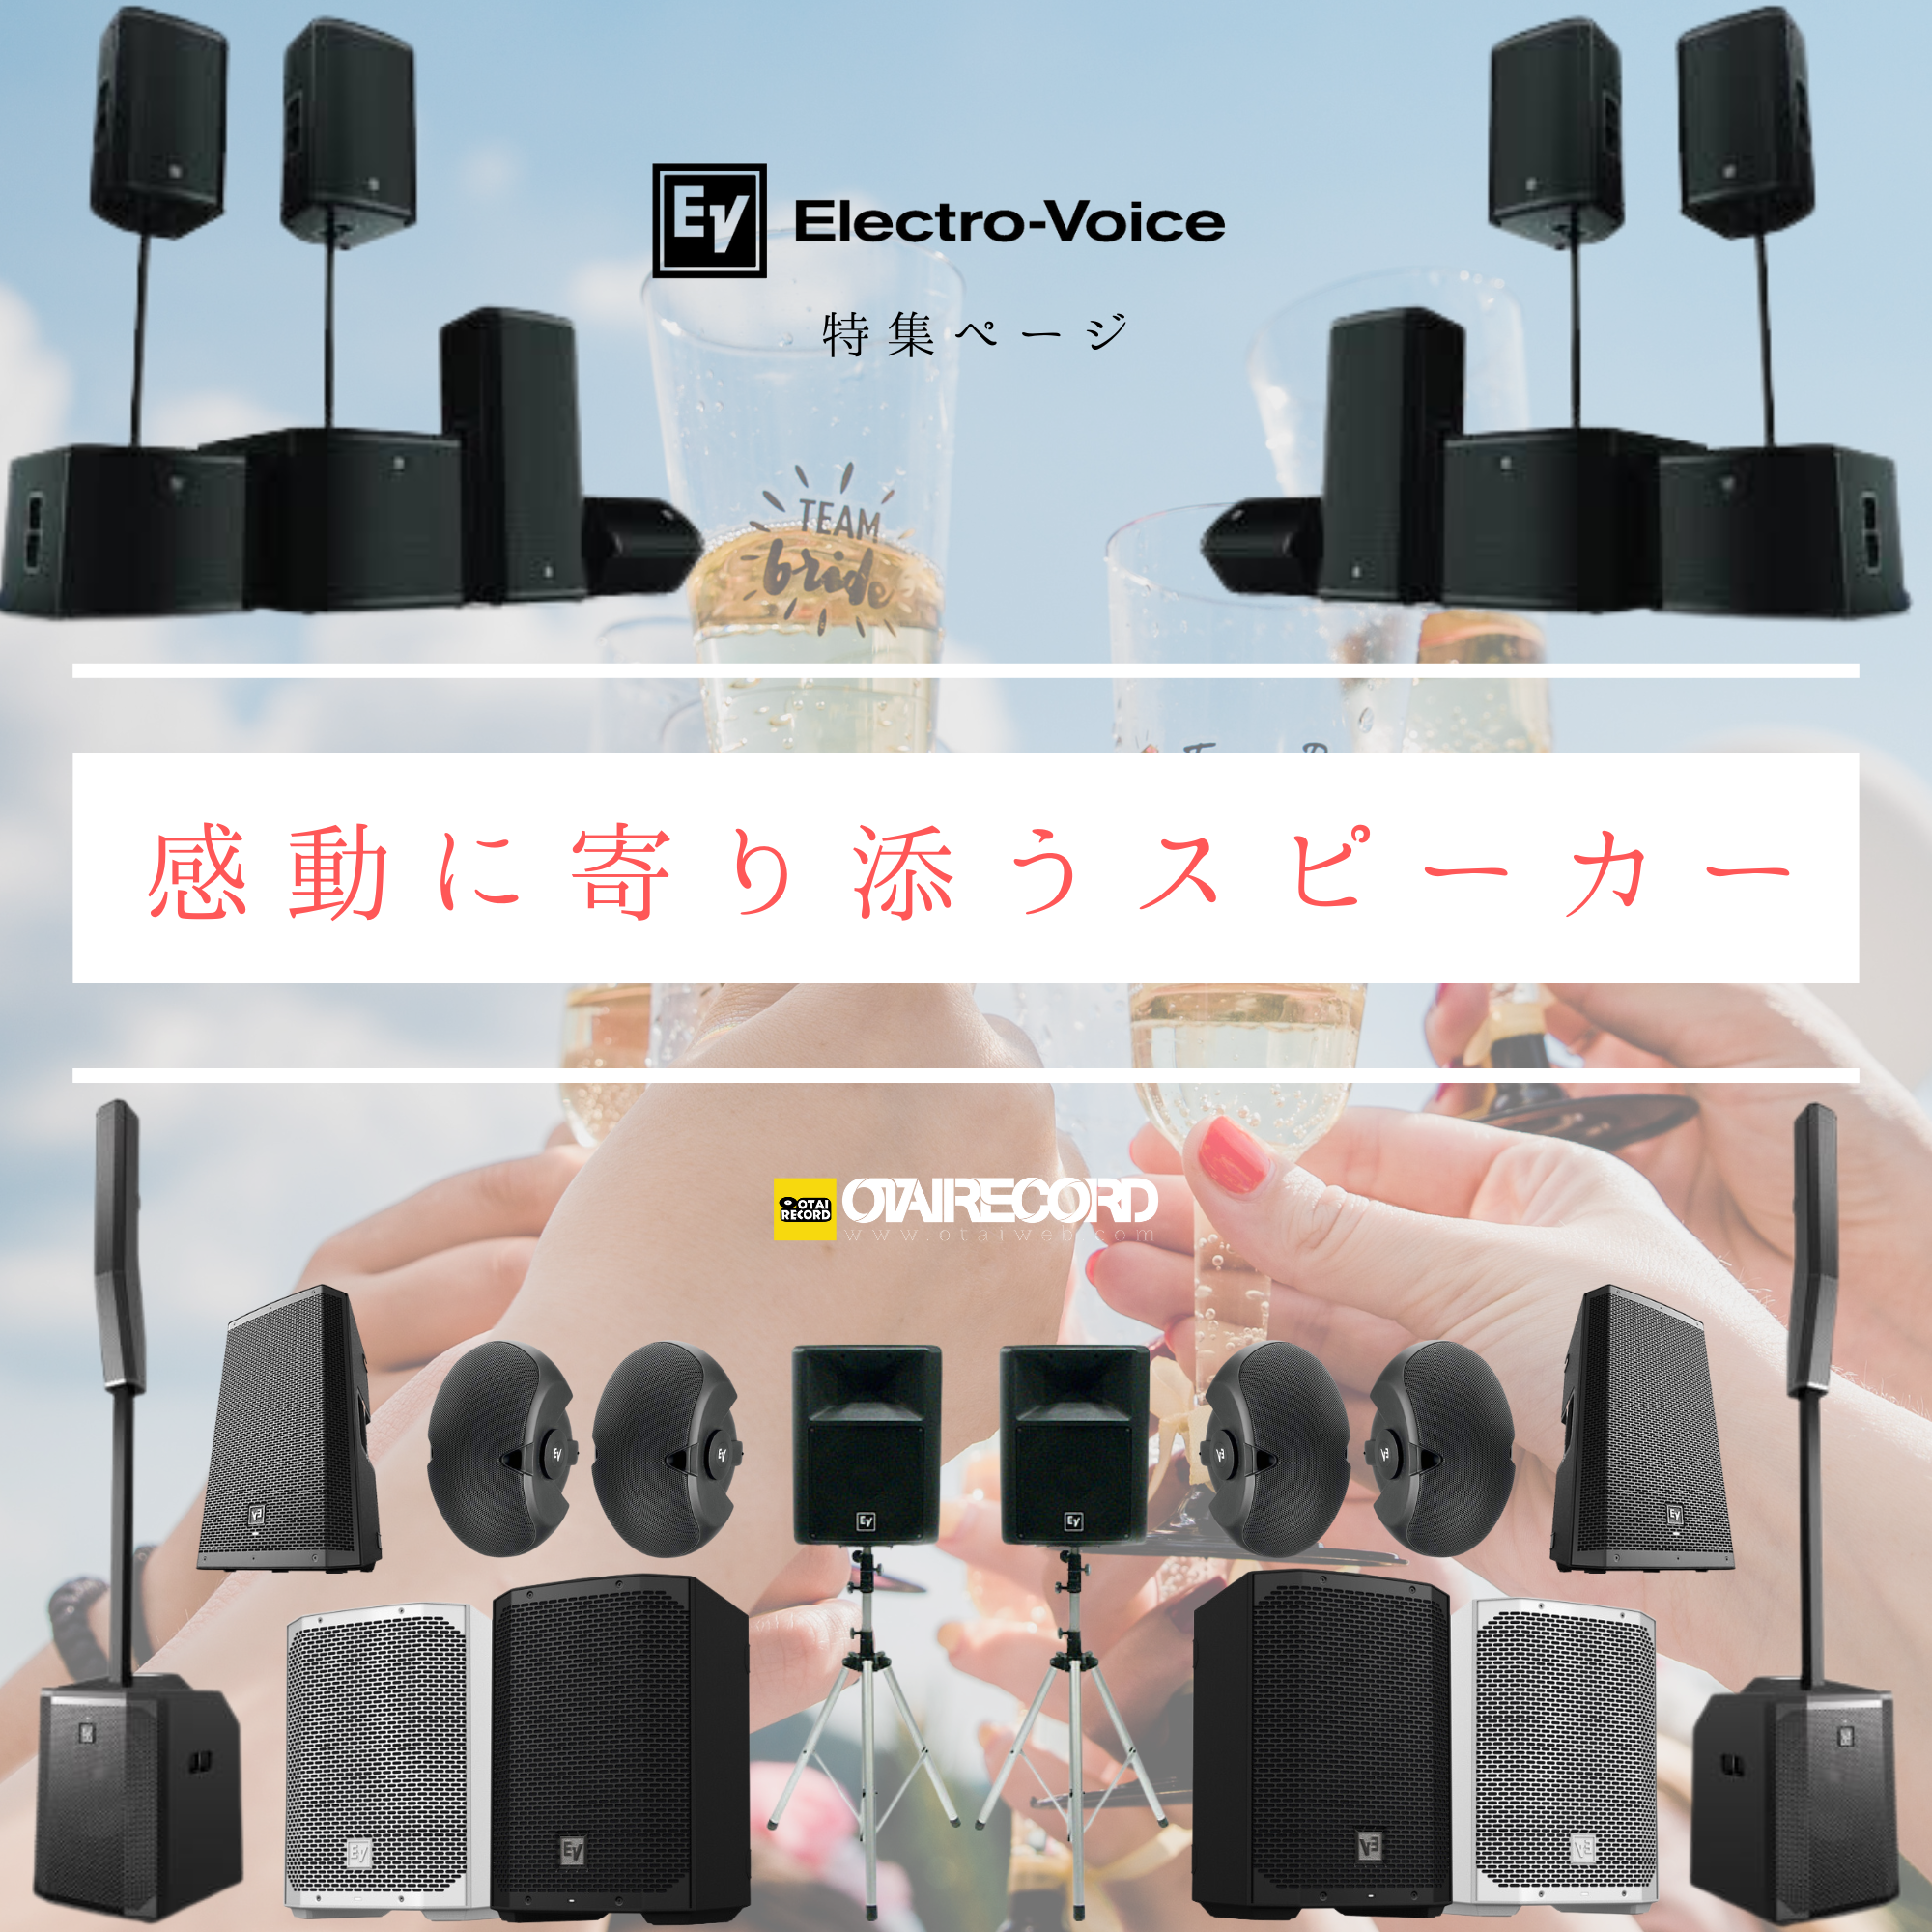 Electro-Voice特集